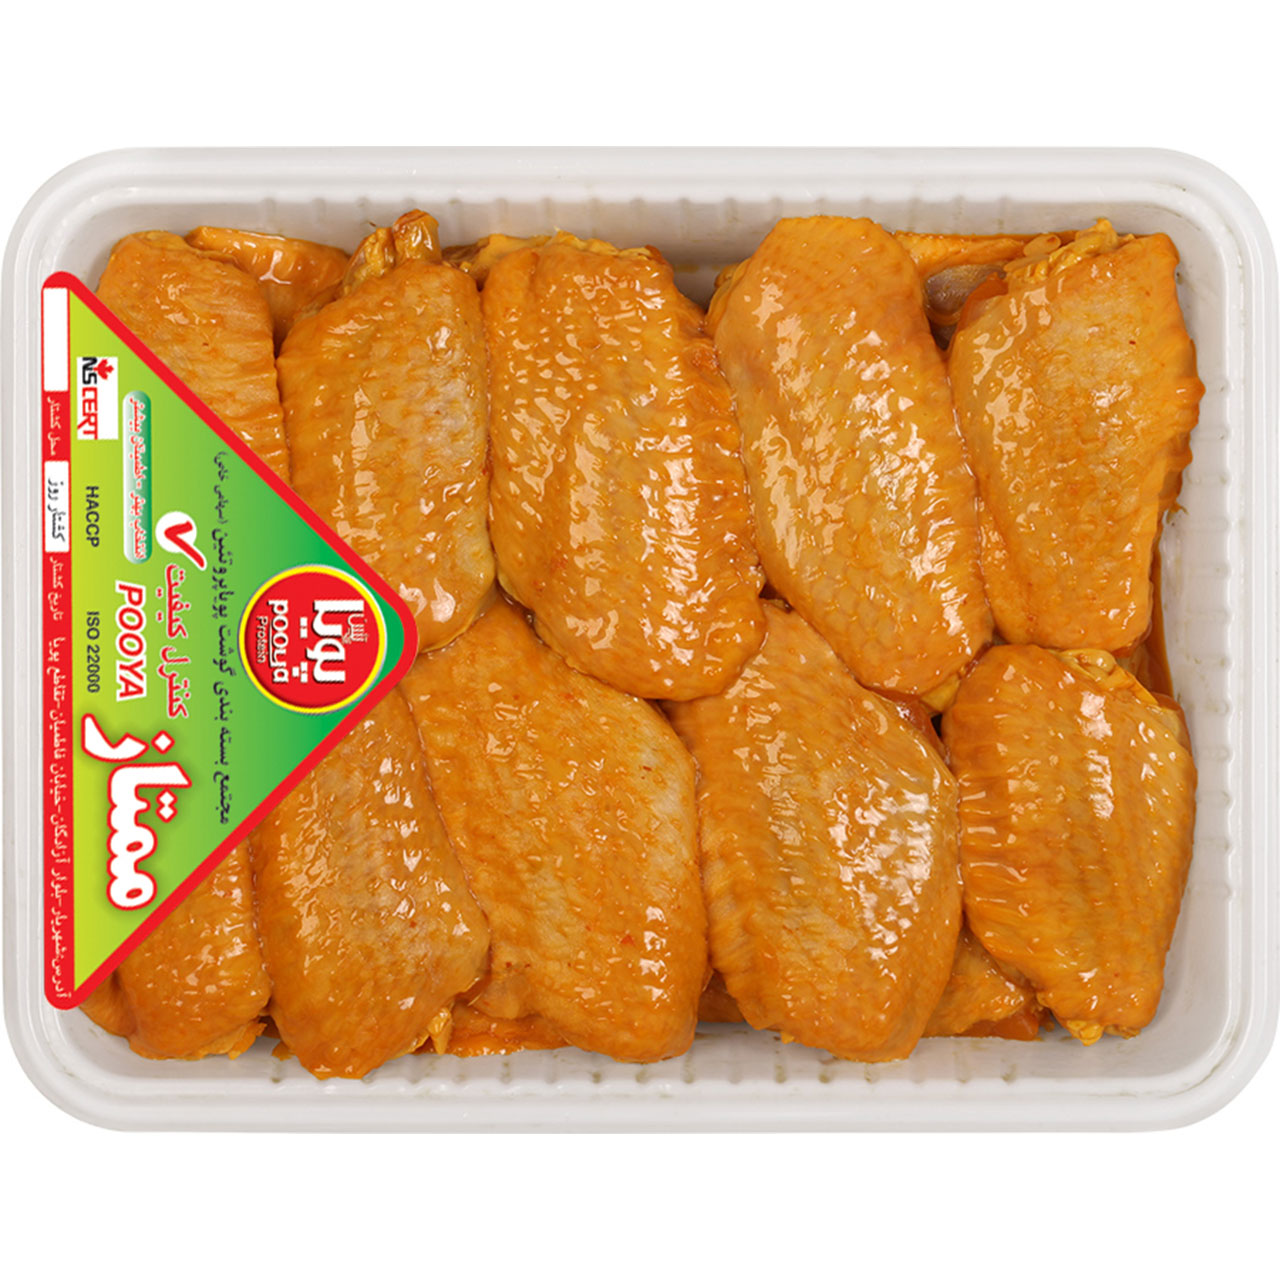 بال کبابی مرغ پویا پروتئین - 900 گرم